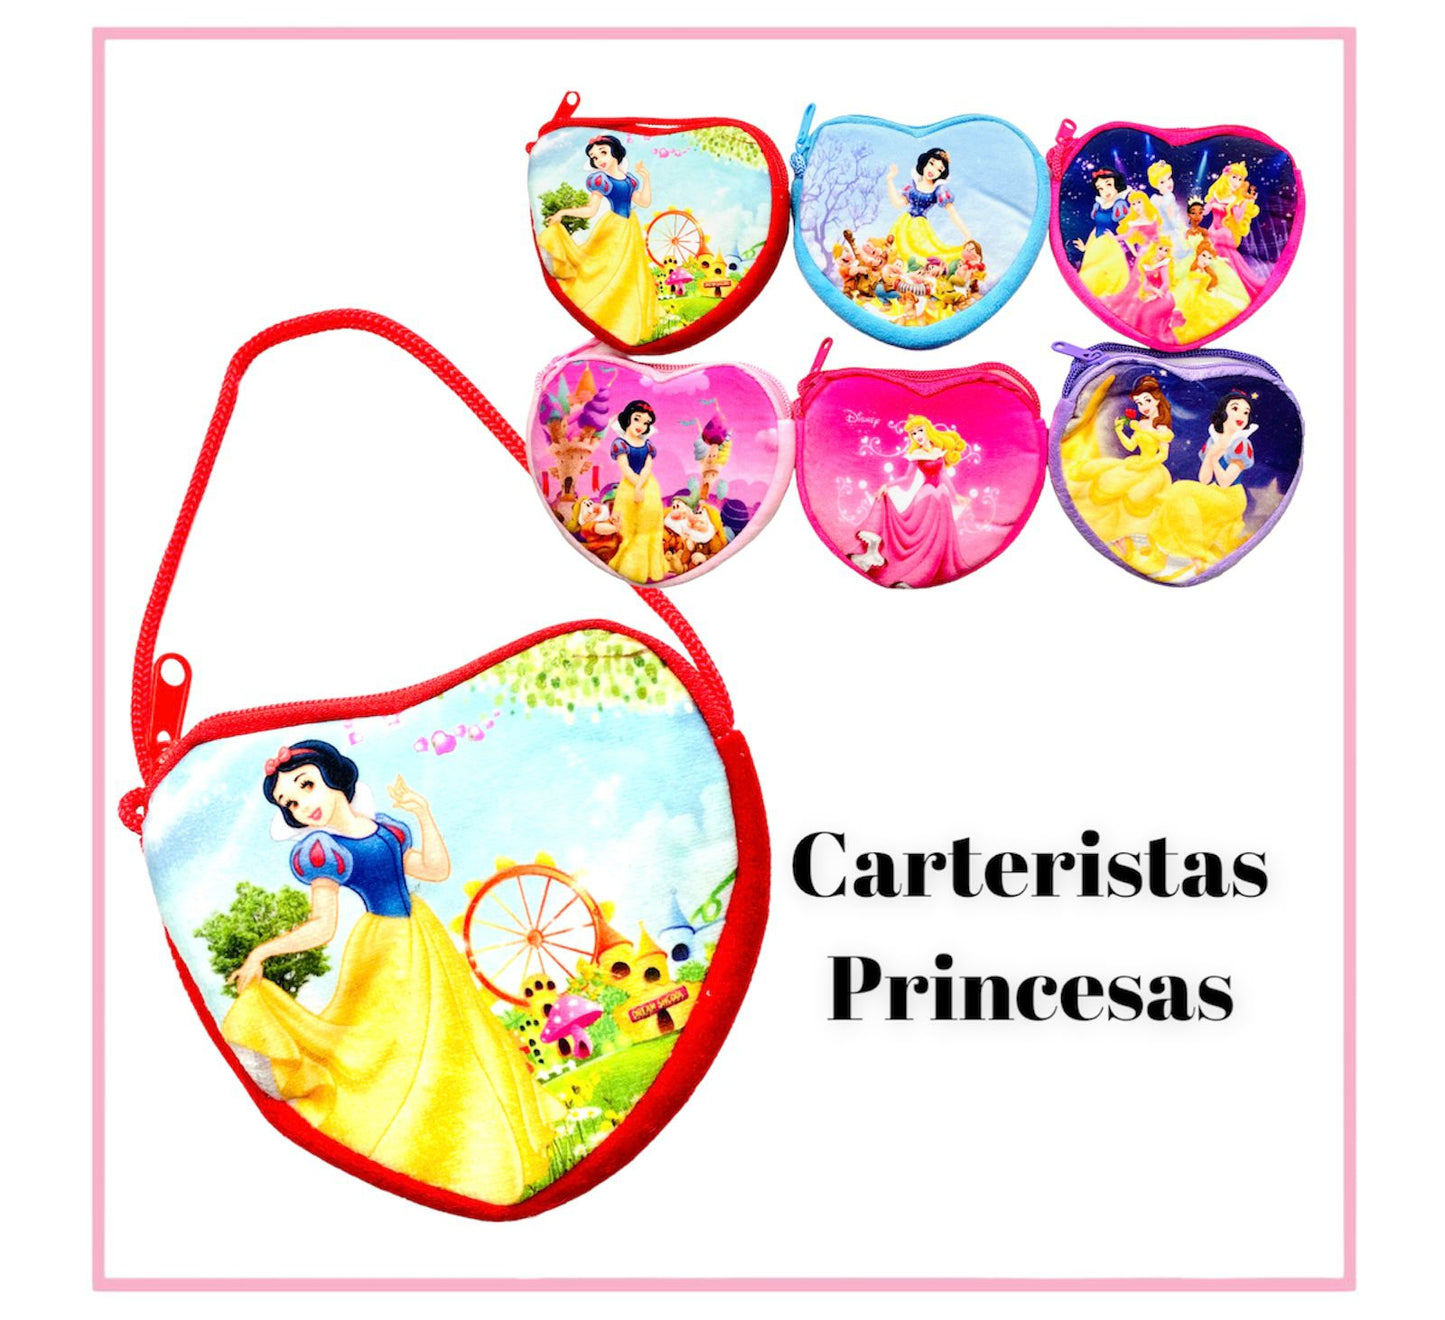 Carteristas Princesas